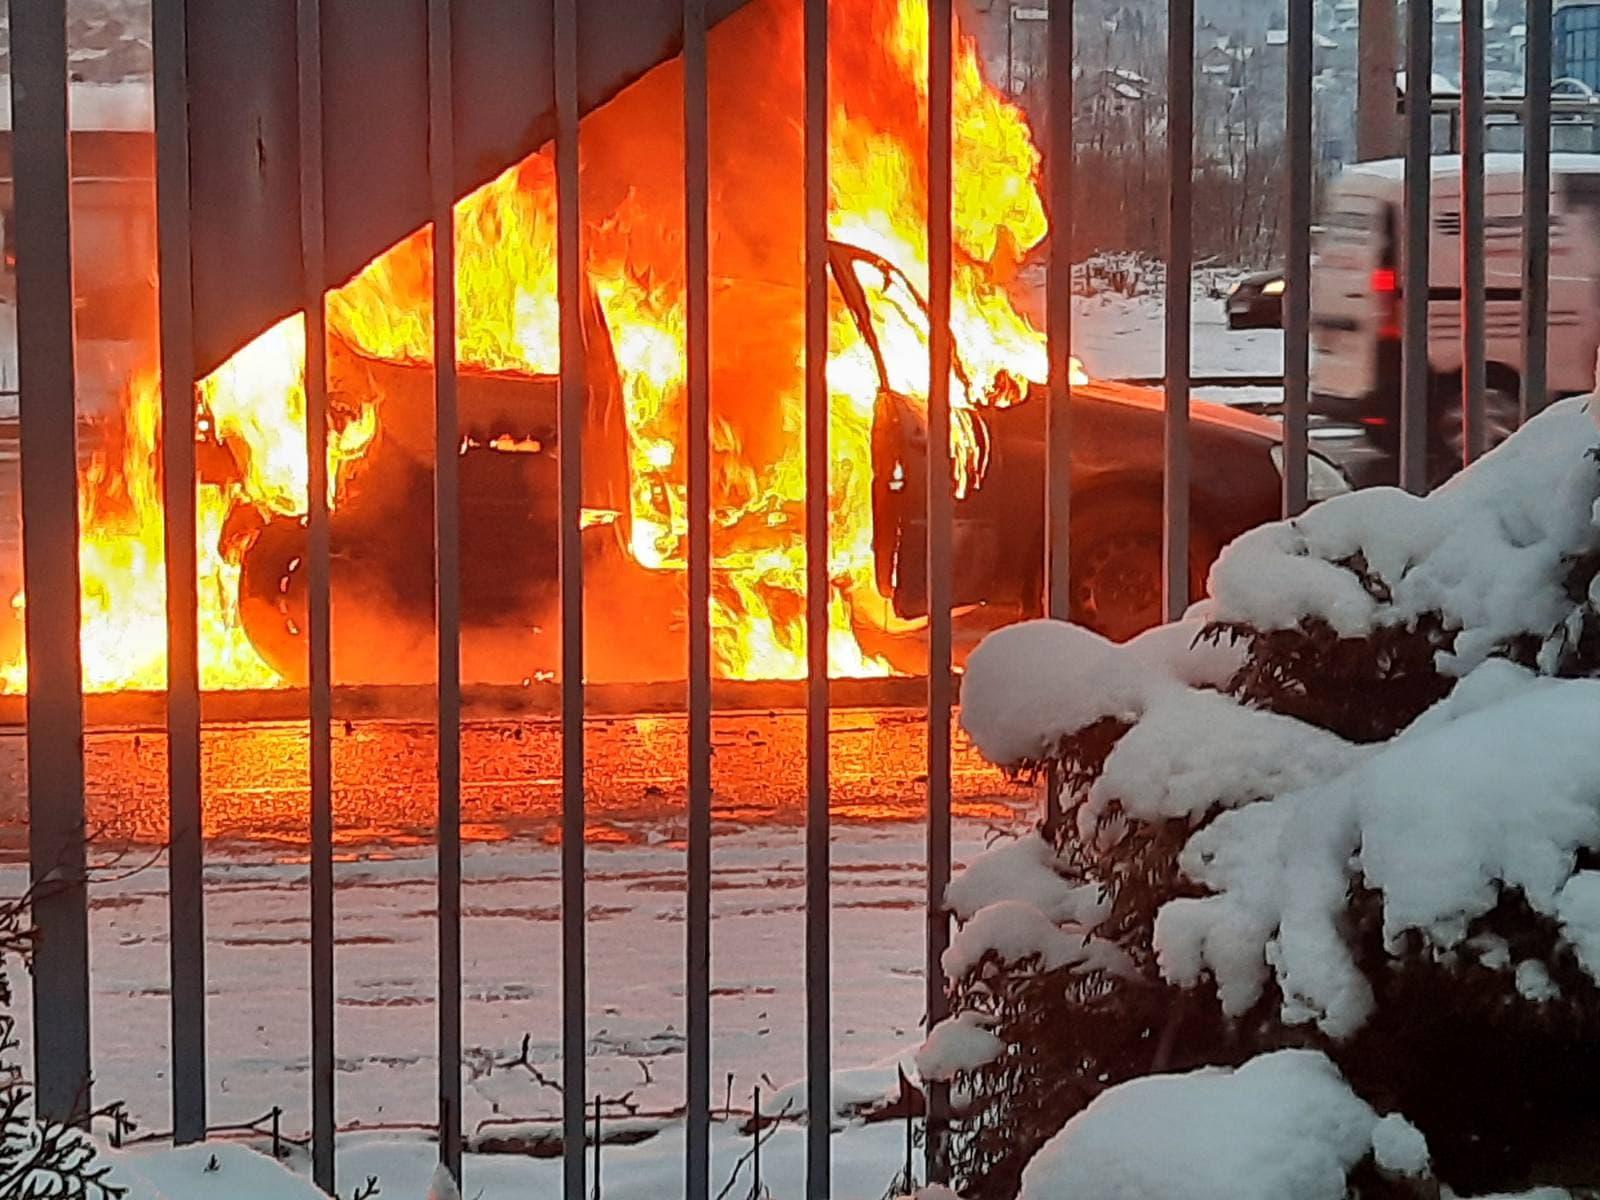 Zapalio se automobil na saobraćajnici u Nedžarićima